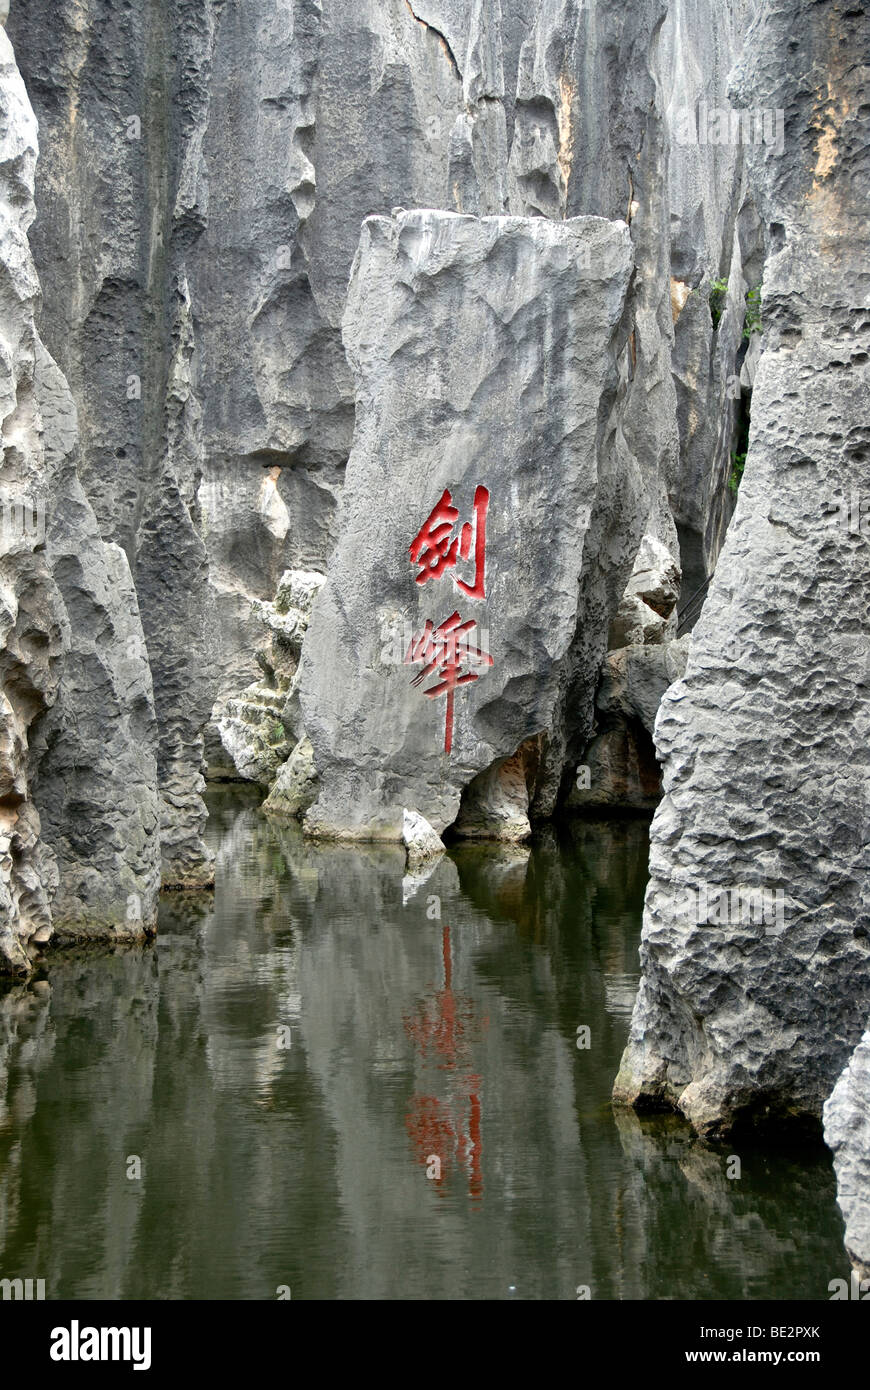 Sitio del Patrimonio Mundial de la UNESCO, los caracteres chinos se refleja en el agua, escultura-como rocas, karst, Bosque de Piedras de Shilin, Yunnan Pro Foto de stock